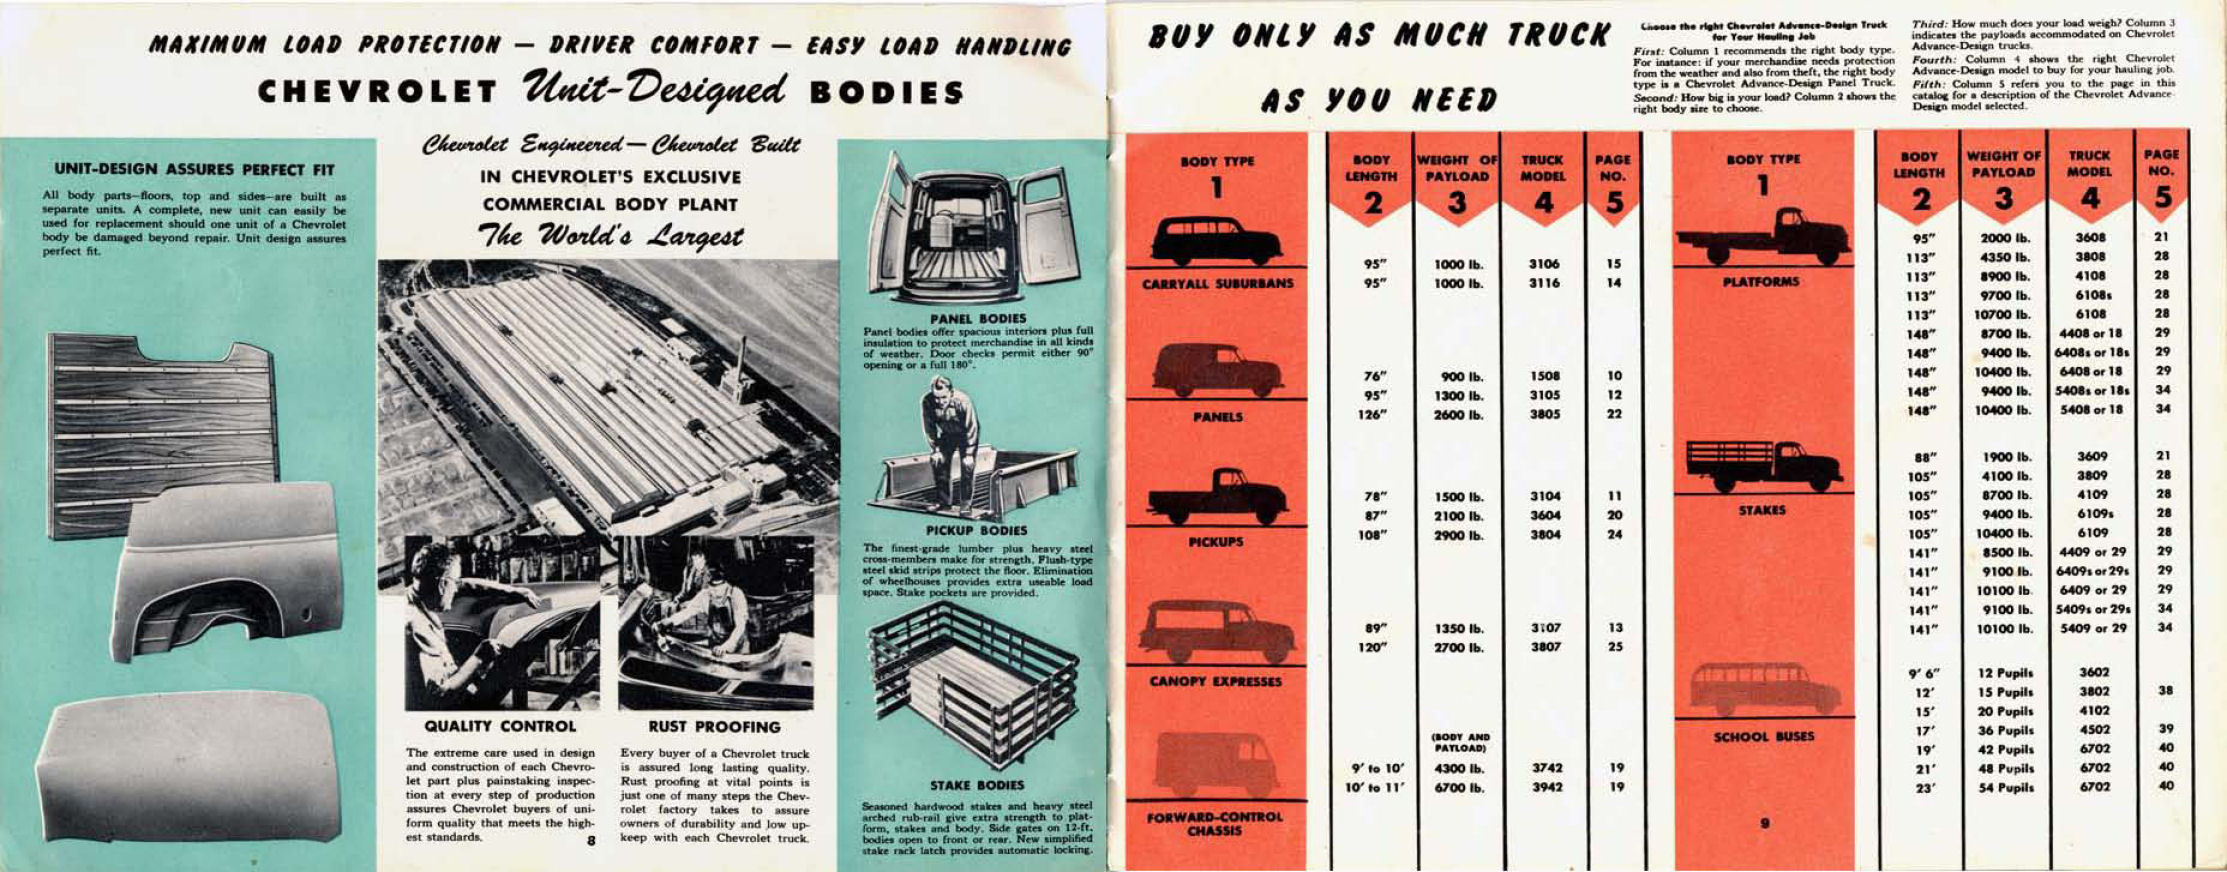 1951_Chevrolet_Trucks_Full_Line-08-09